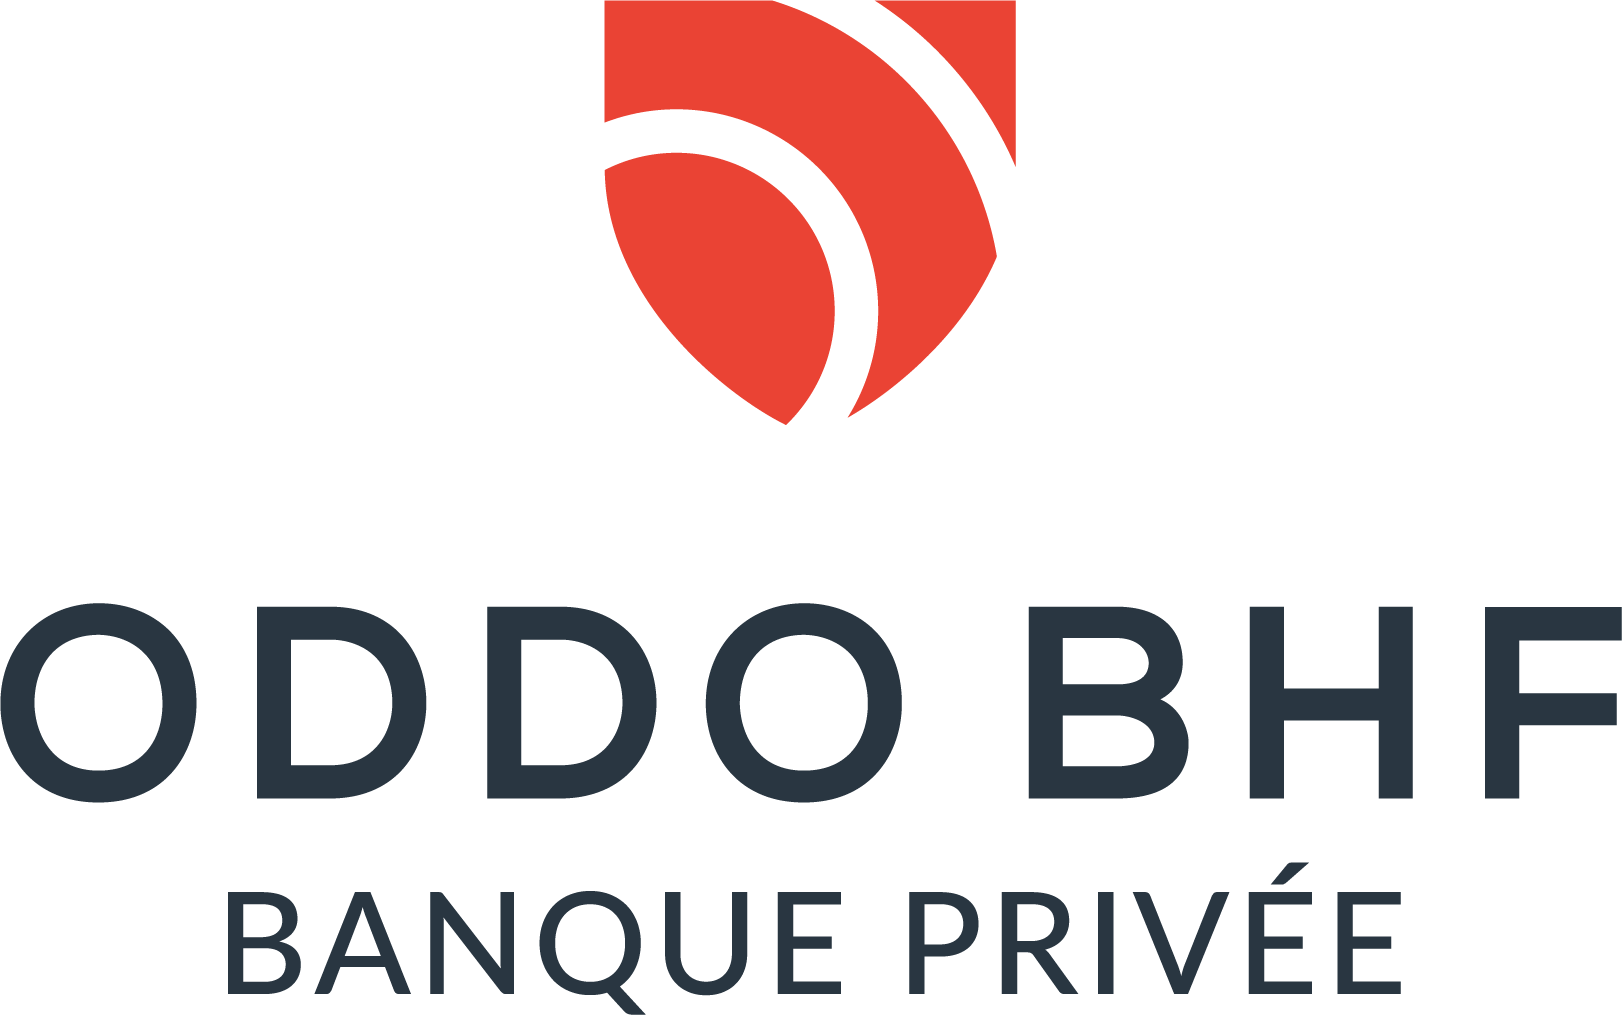 ODDO BHF Banque Privée